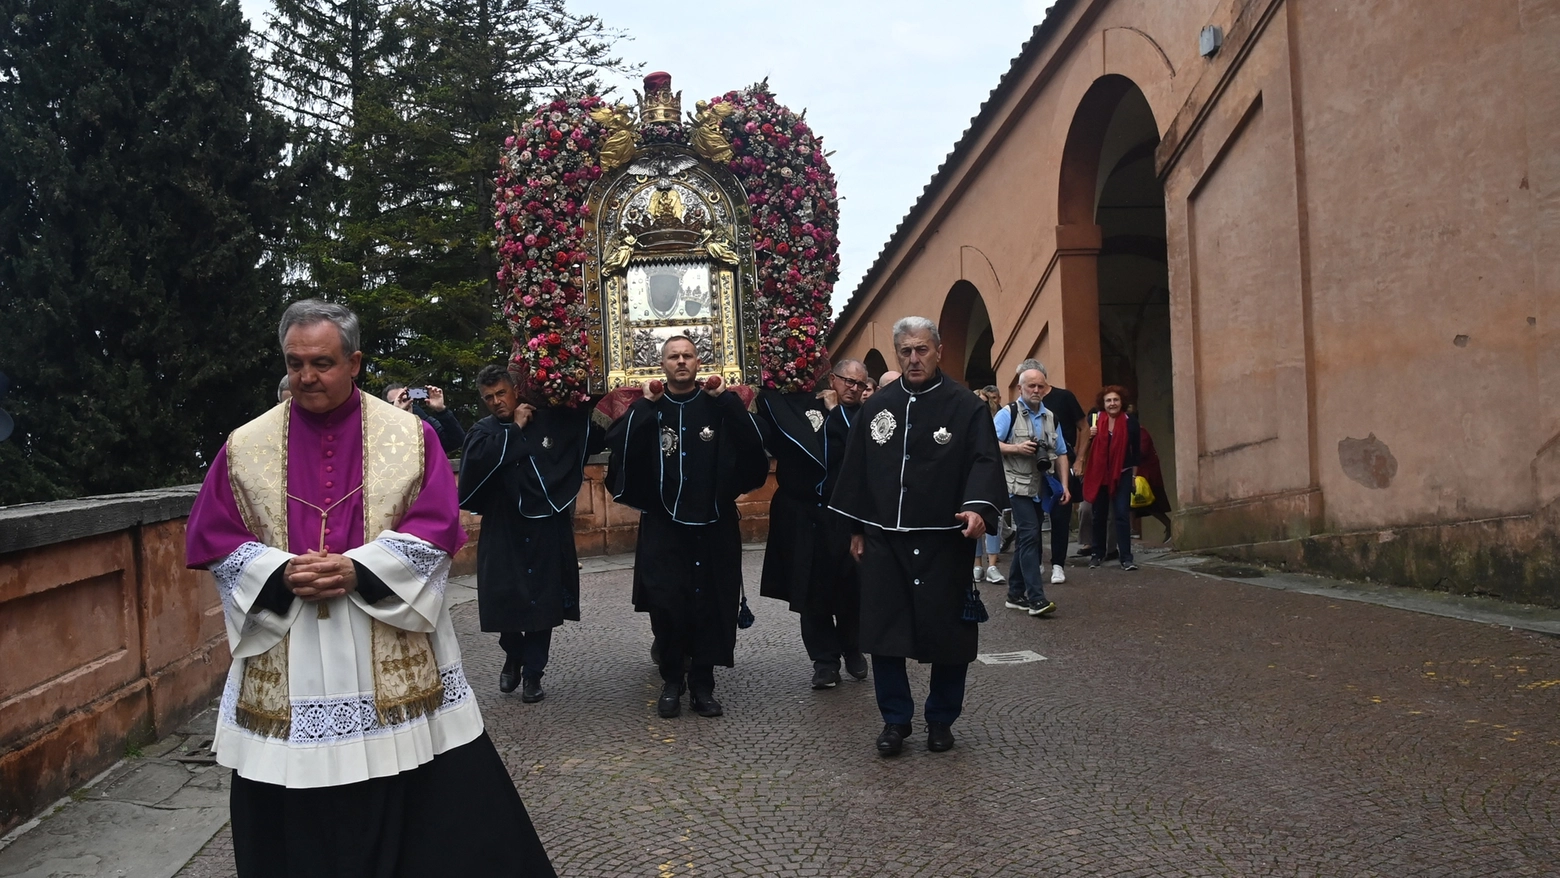 La venerata icona resterà nella cattedrale per una settimana, risalita prevista il 12 maggio. Nel weekend la processione, tra sette giorni la cerimonia con Zuppi in piazza Maggiore